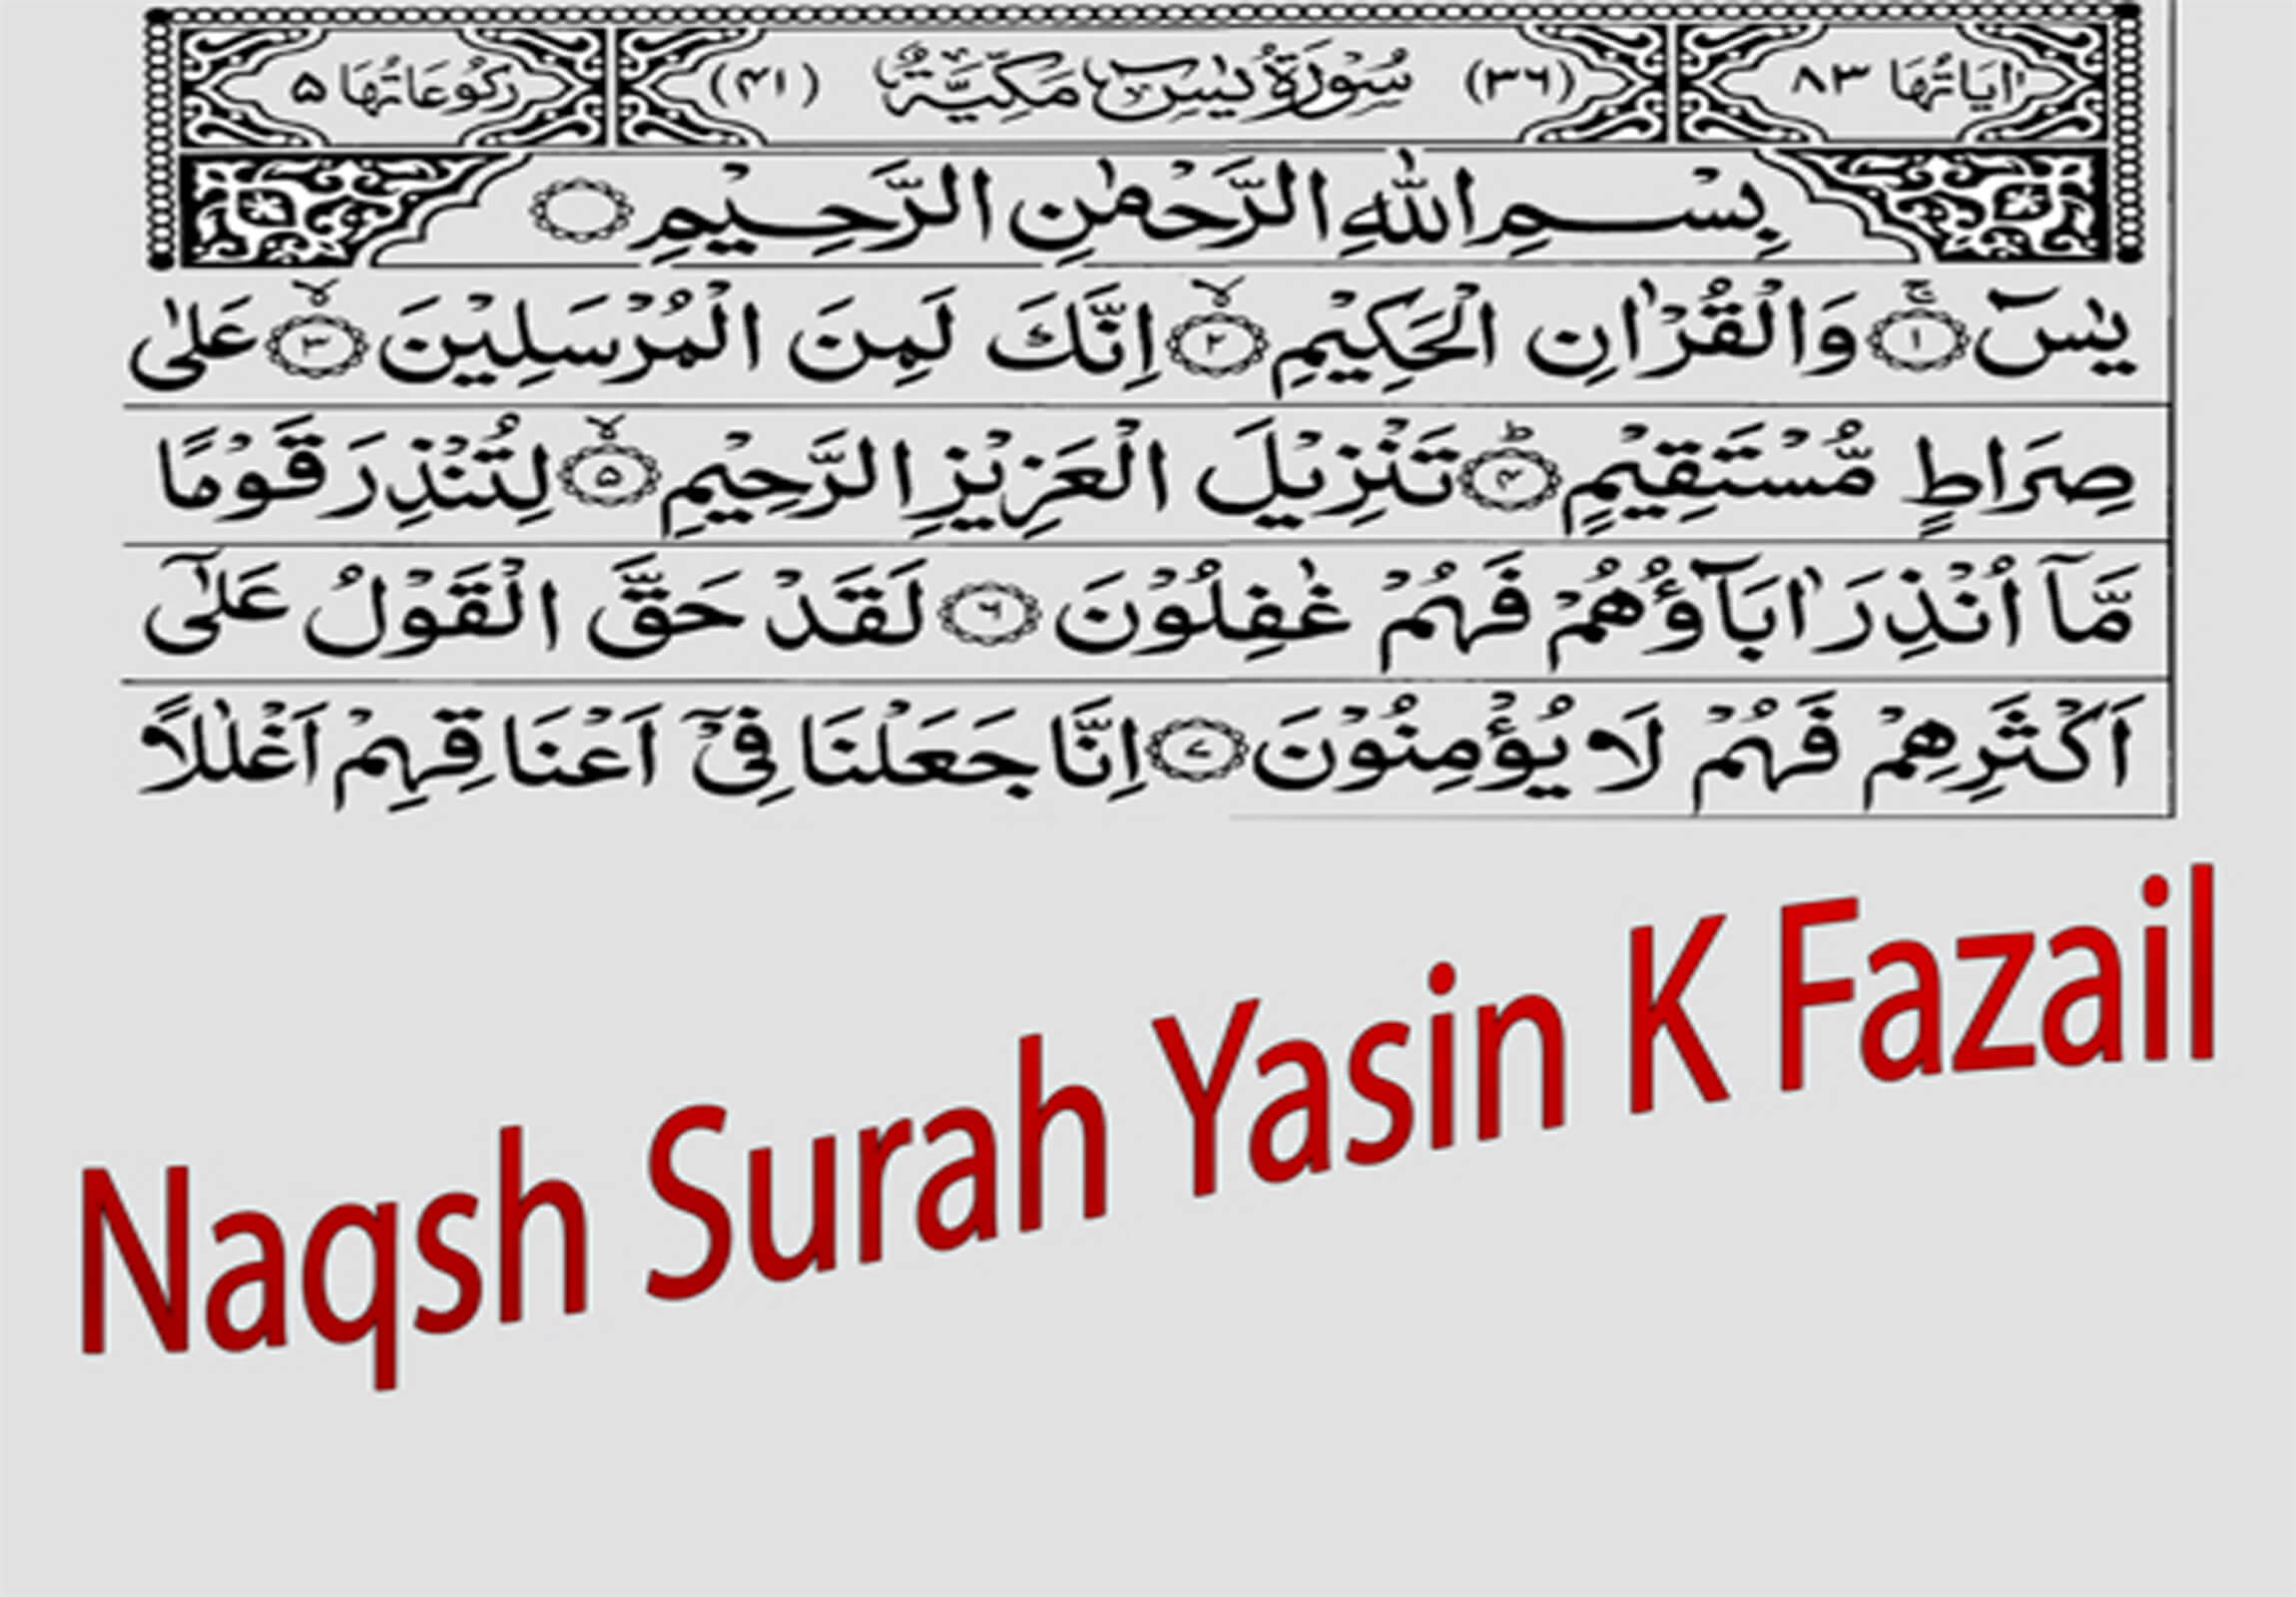 Yassin surah